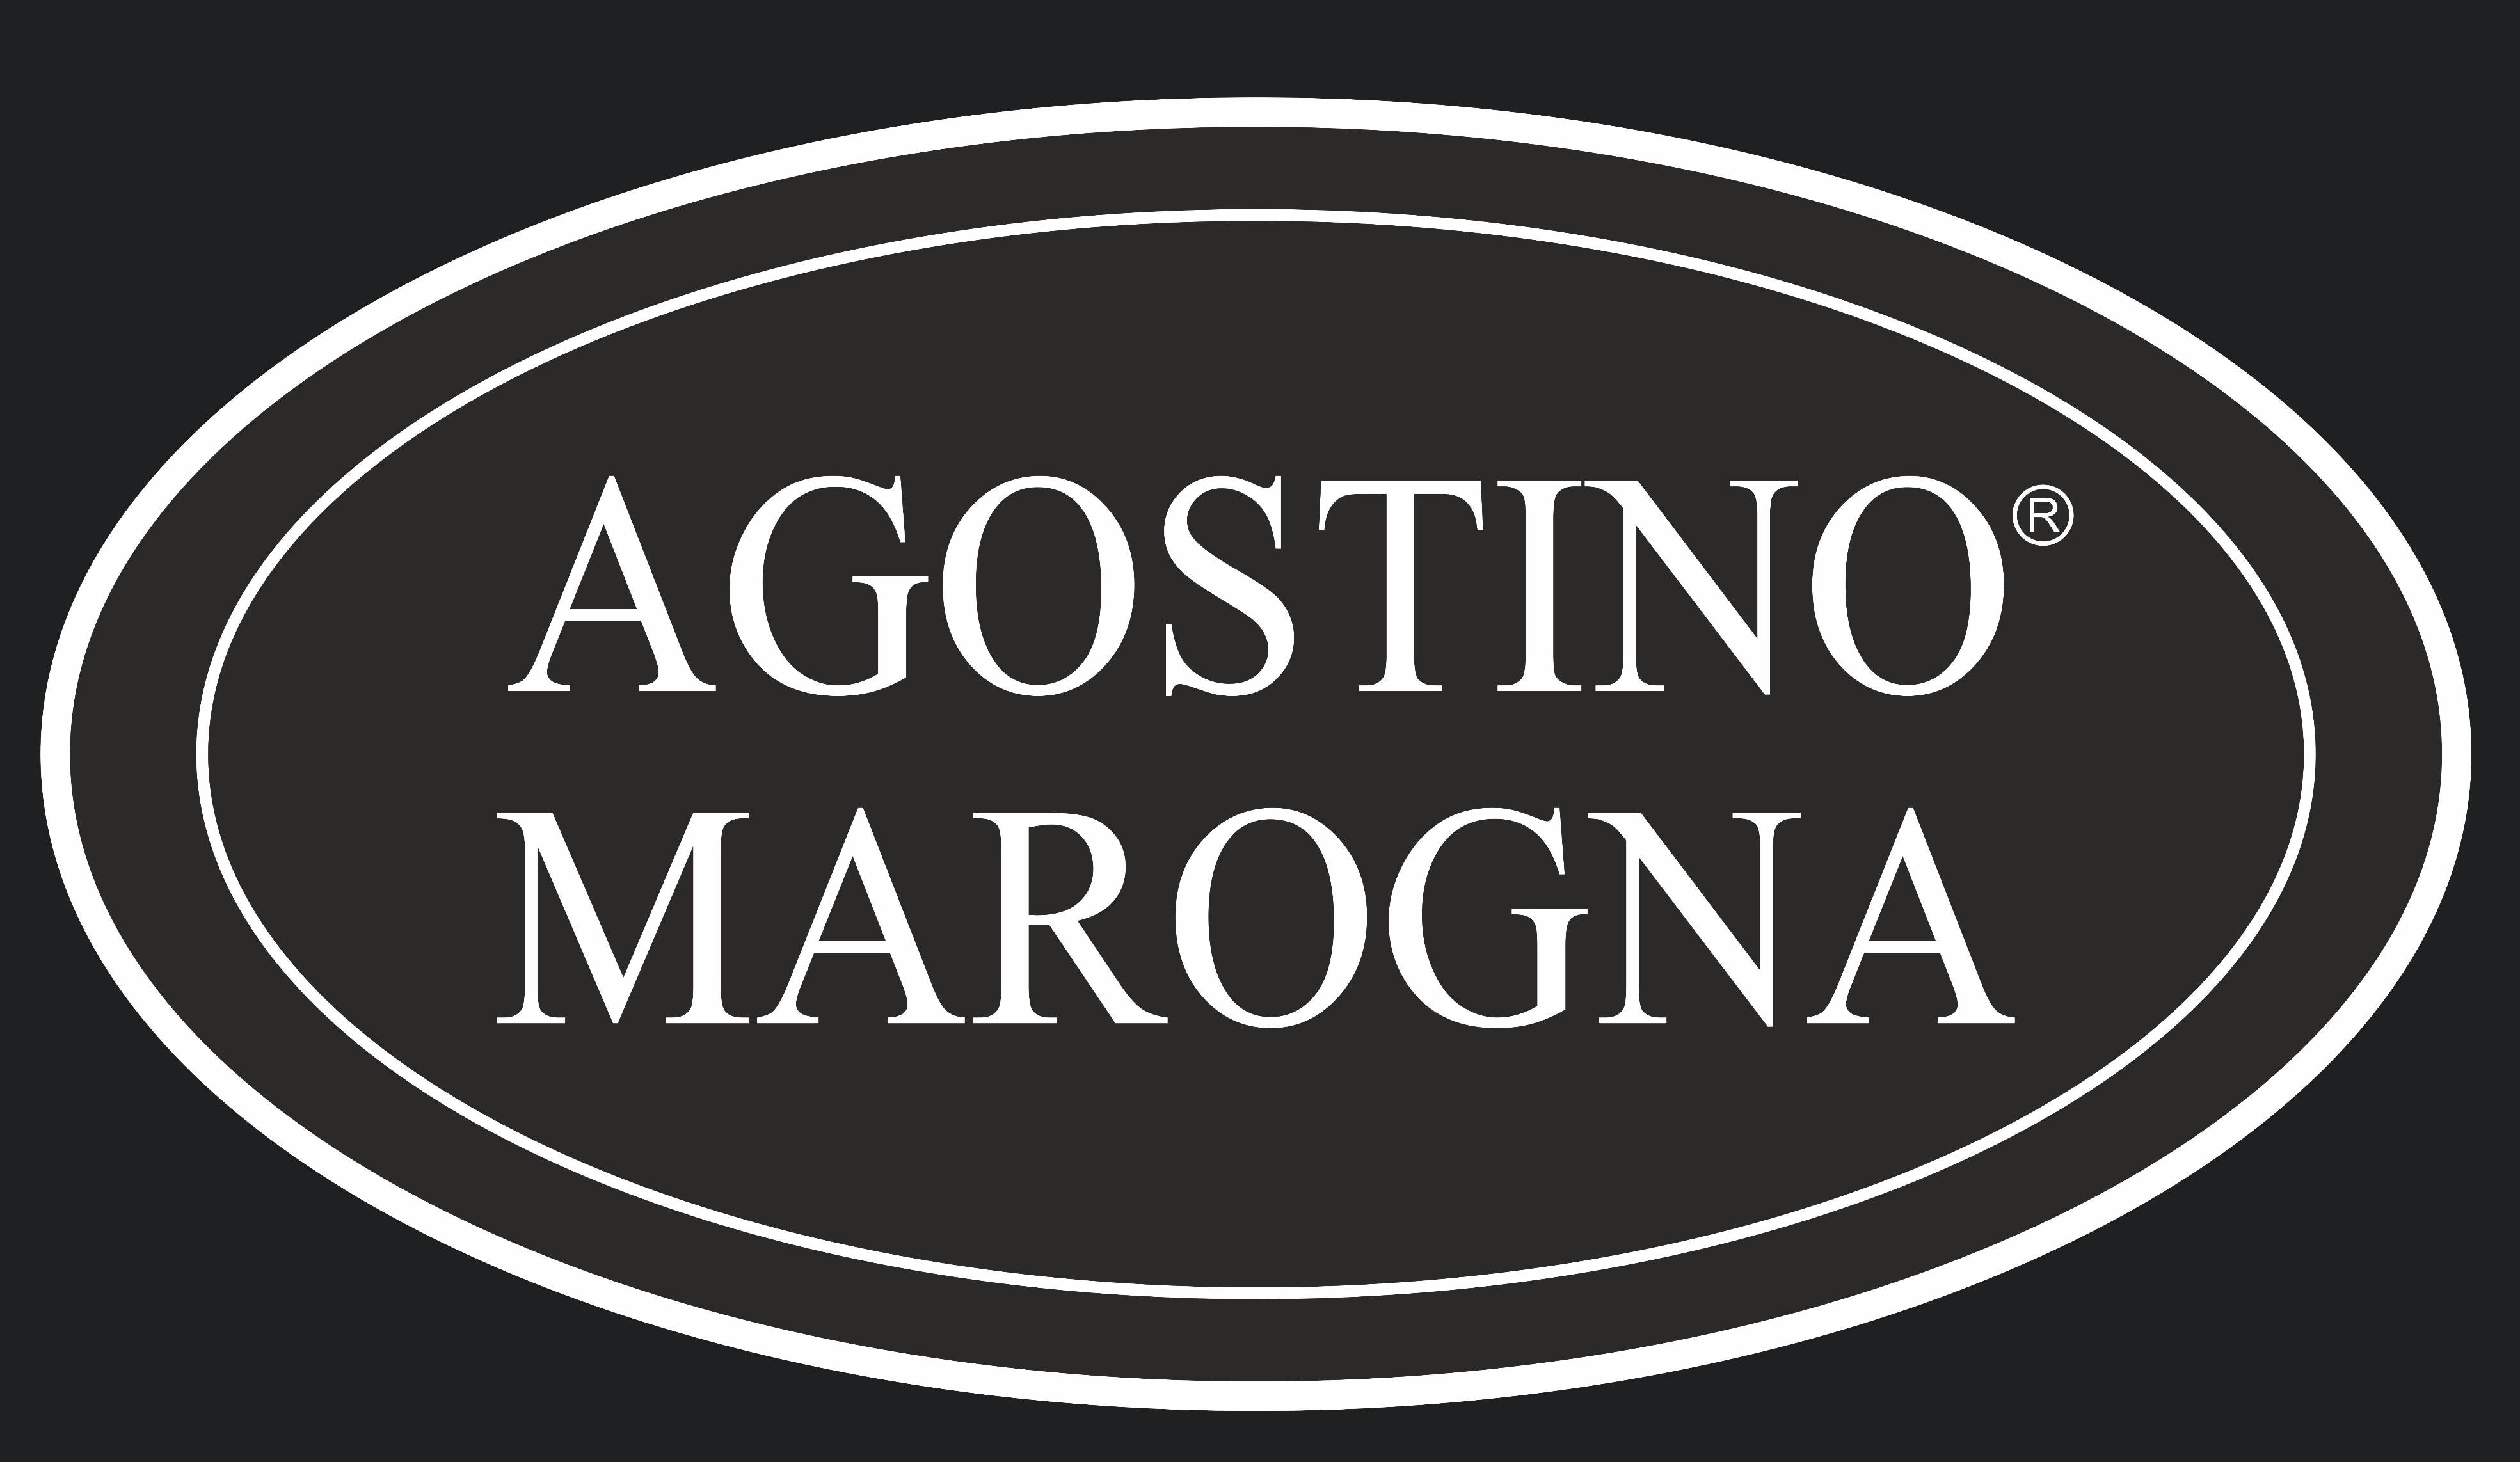 Agostino Marogna Gioielli di Prendas S.r.l.